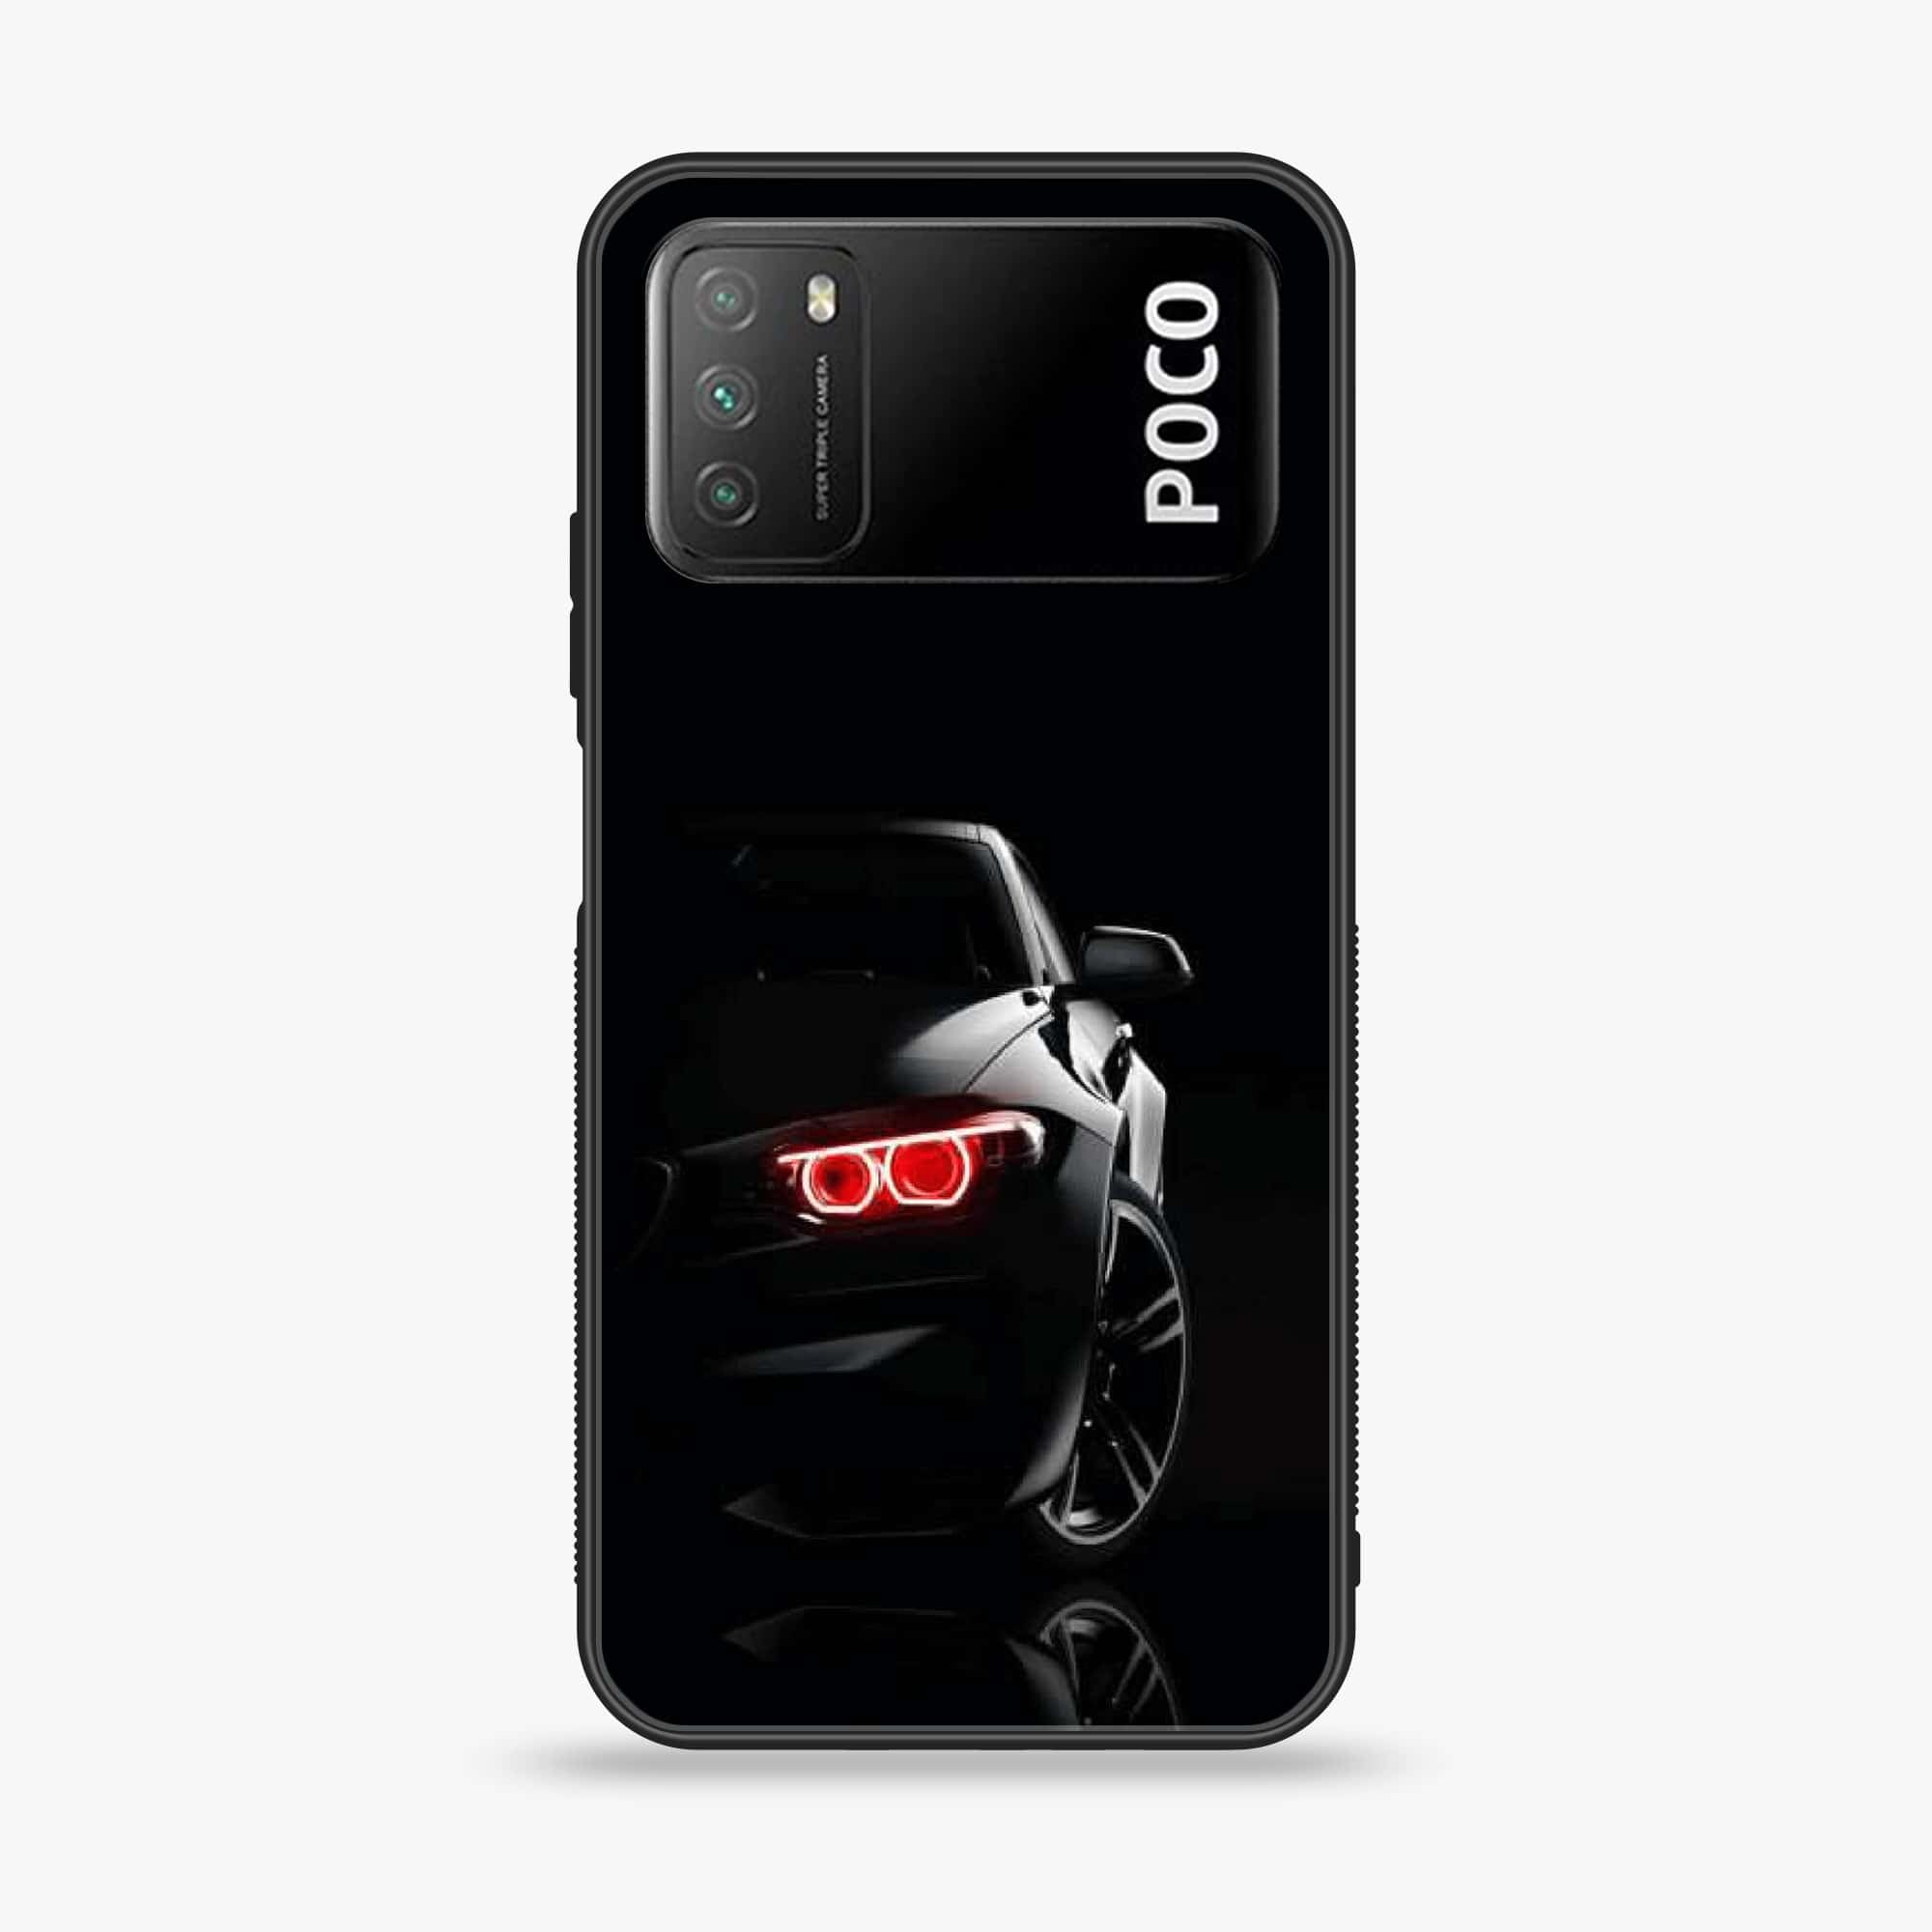 Xiaomi Poco M3 - Black Art Series - Premium Printed Glass soft Bumper shock Proof Case